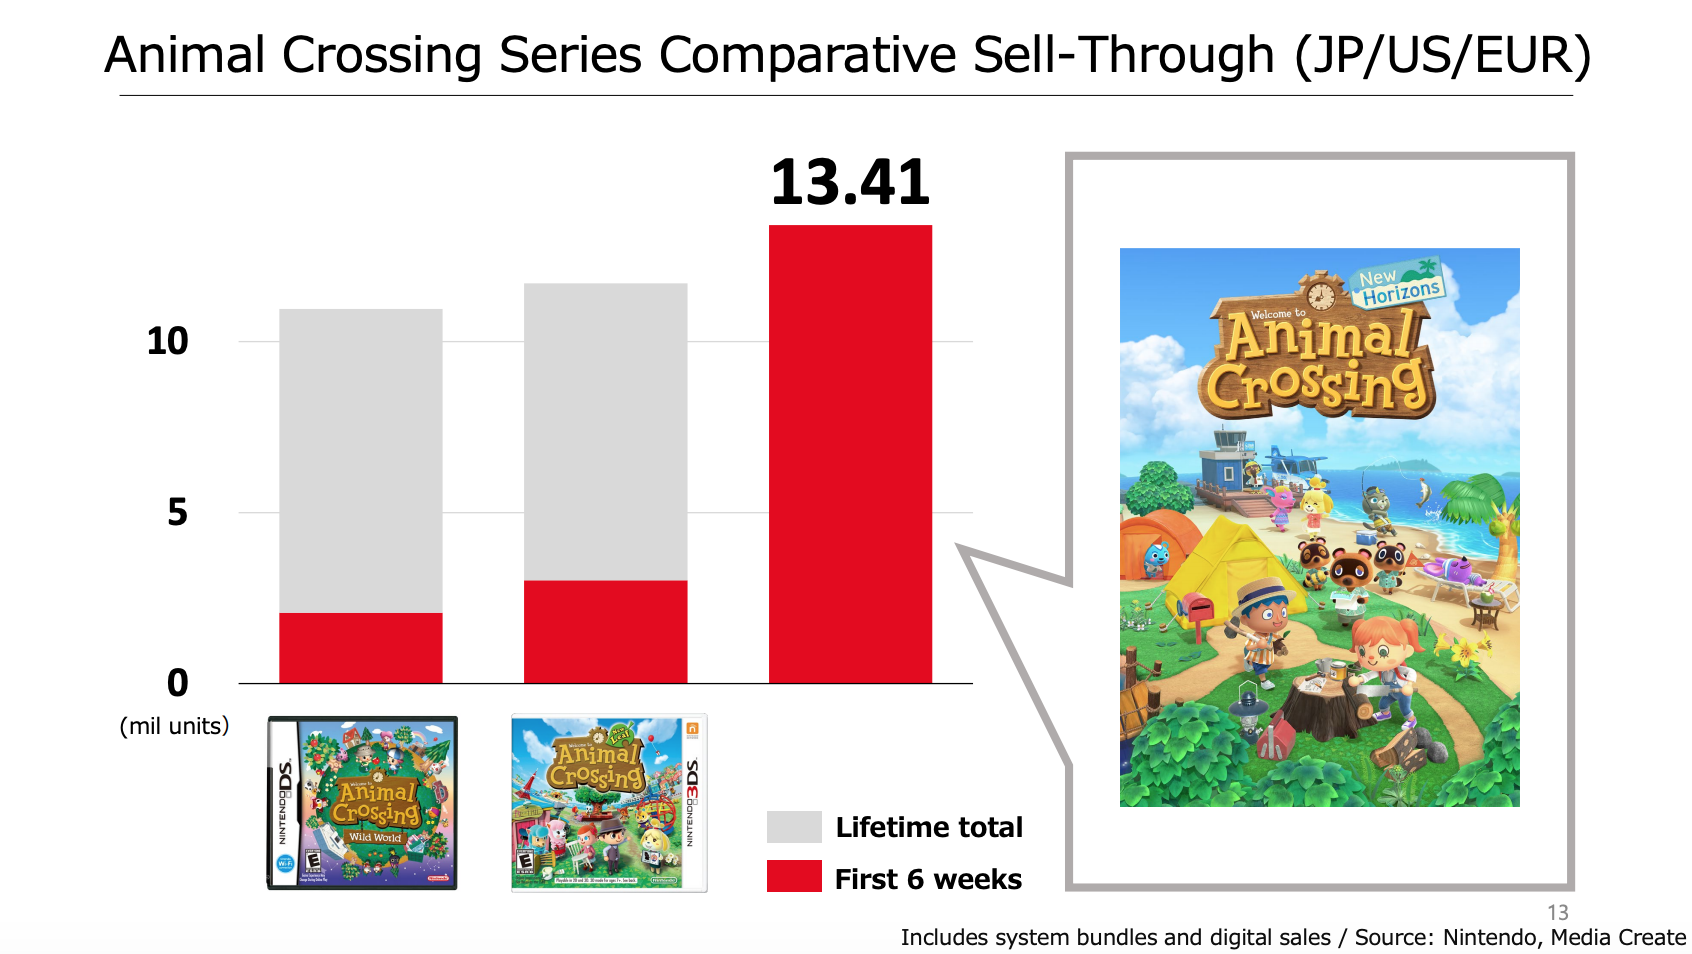 animal crossing games sales